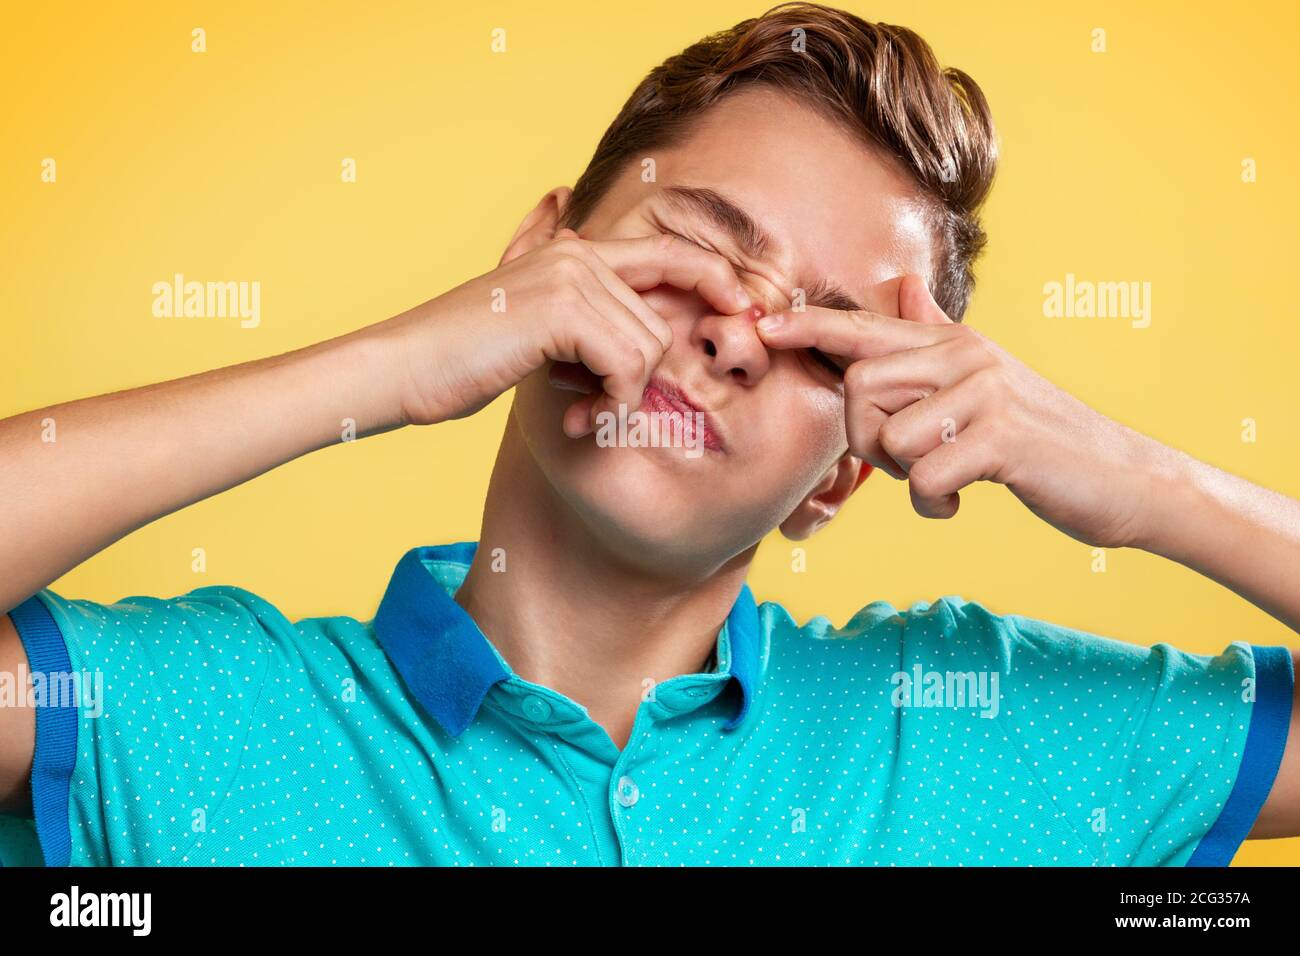 Kosmetologie, Dermatologie und Akne. Ein Teenager in einem blauen T-Shirt quetscht mit den Fingern einen Pickel auf seine Nase, die Augen sind vor Schmerzen geschlossen. Gelbe Rückenfarbe Stockfoto